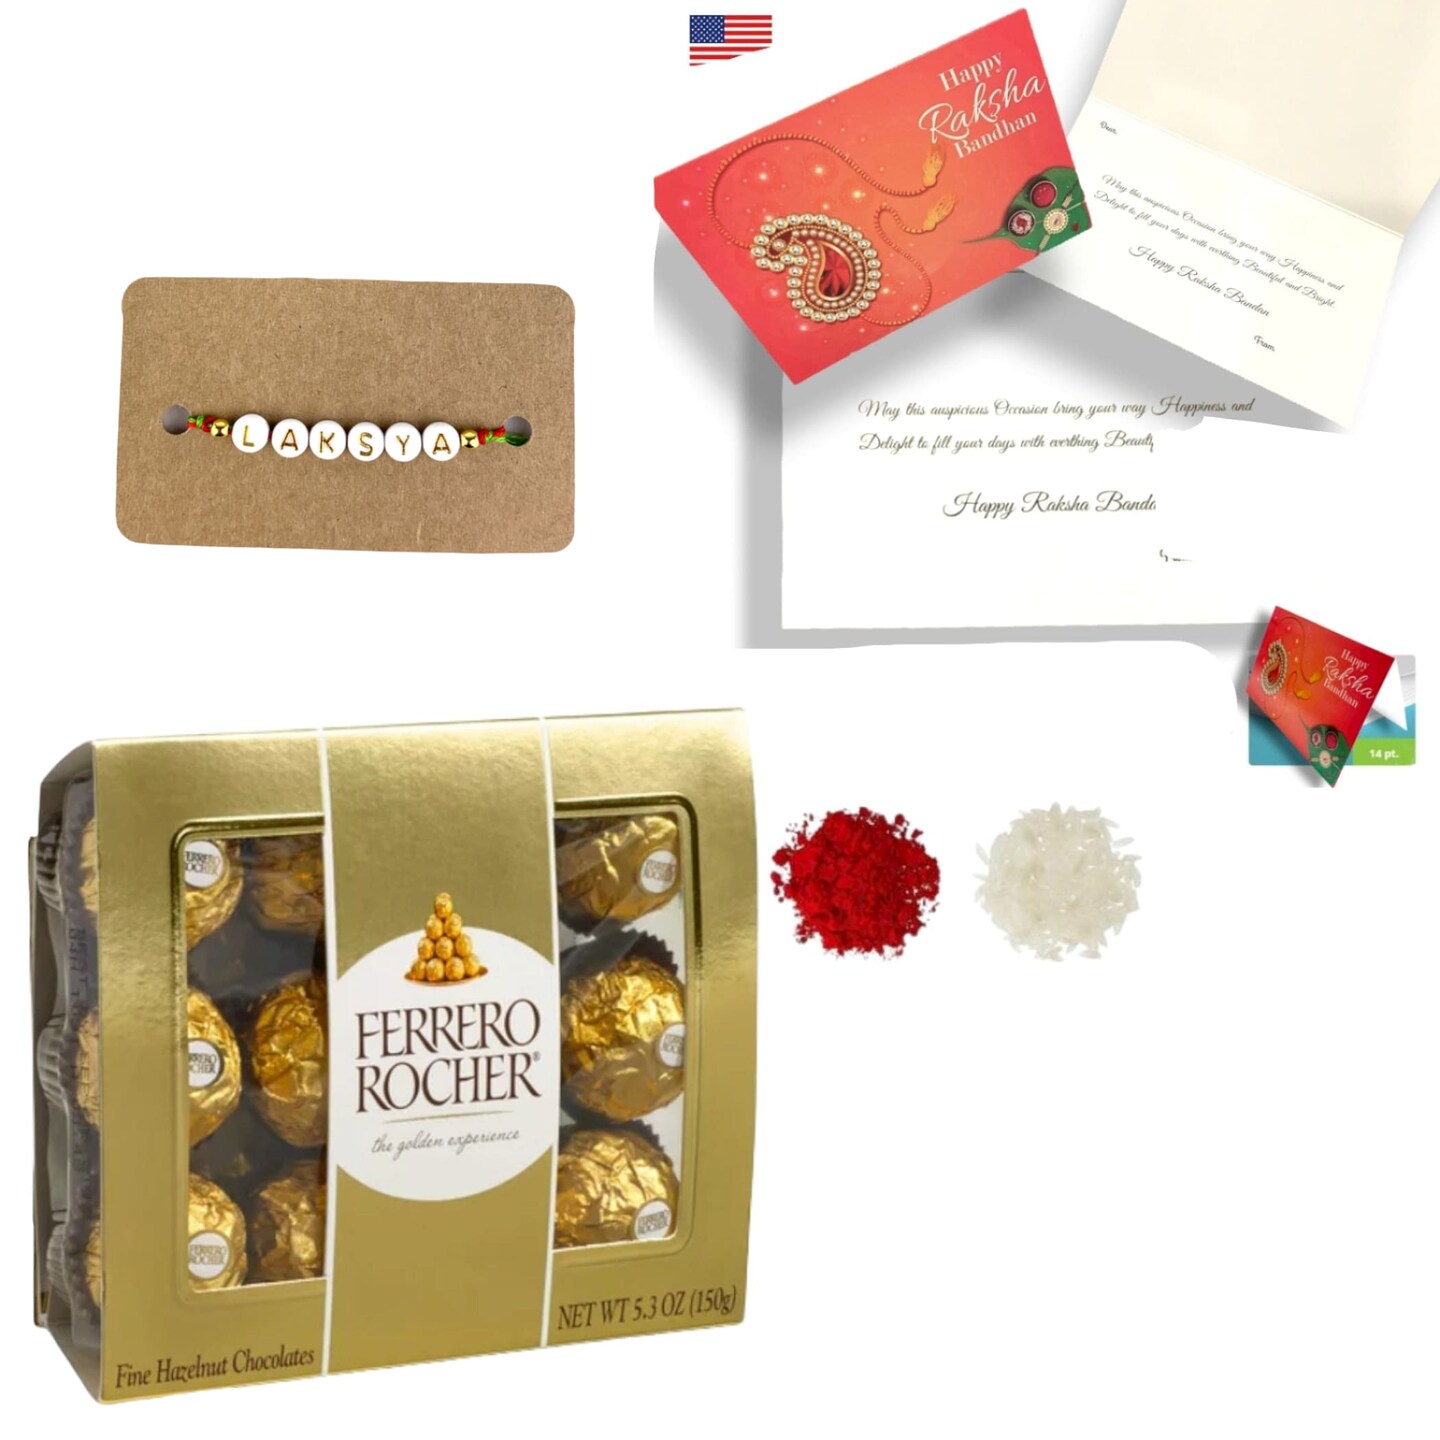 rakhi gift box | handmade gift for brother | rakhi gift ideas for brother | diy  rakhi gift ideas 🔥🔥 - YouTube